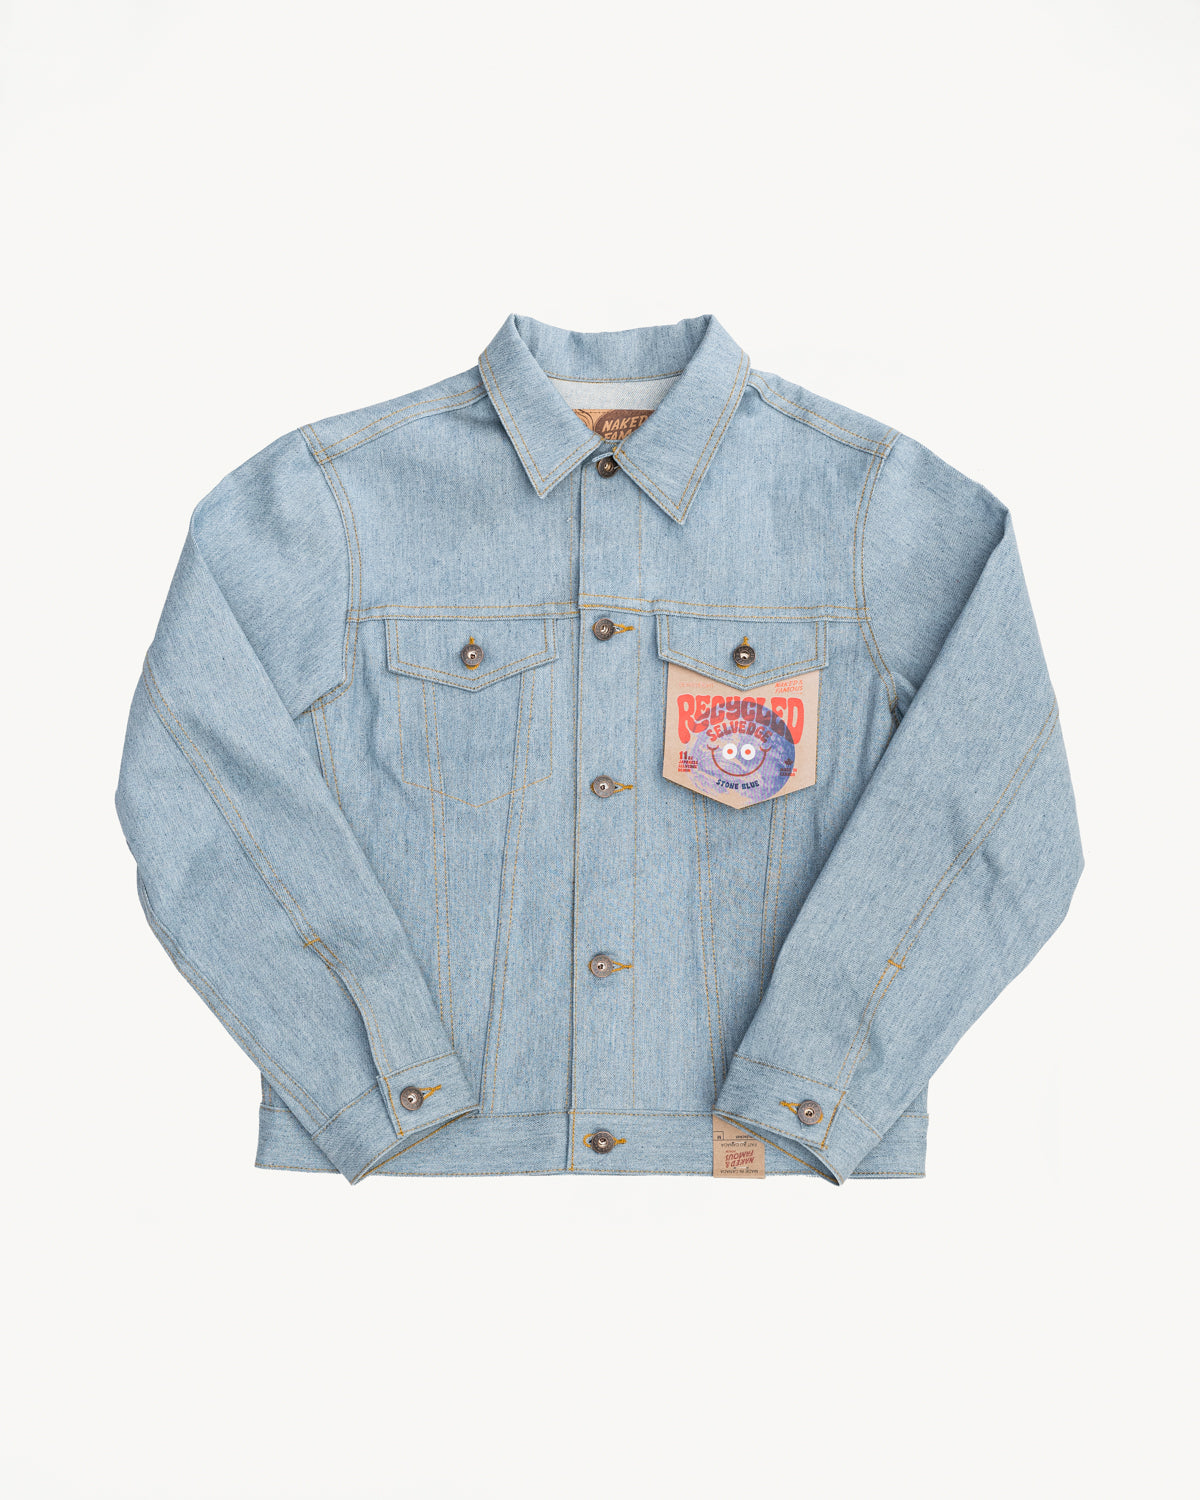 FRUIT Peel Denim Jacket - (Recycled) – ffrruuiitt